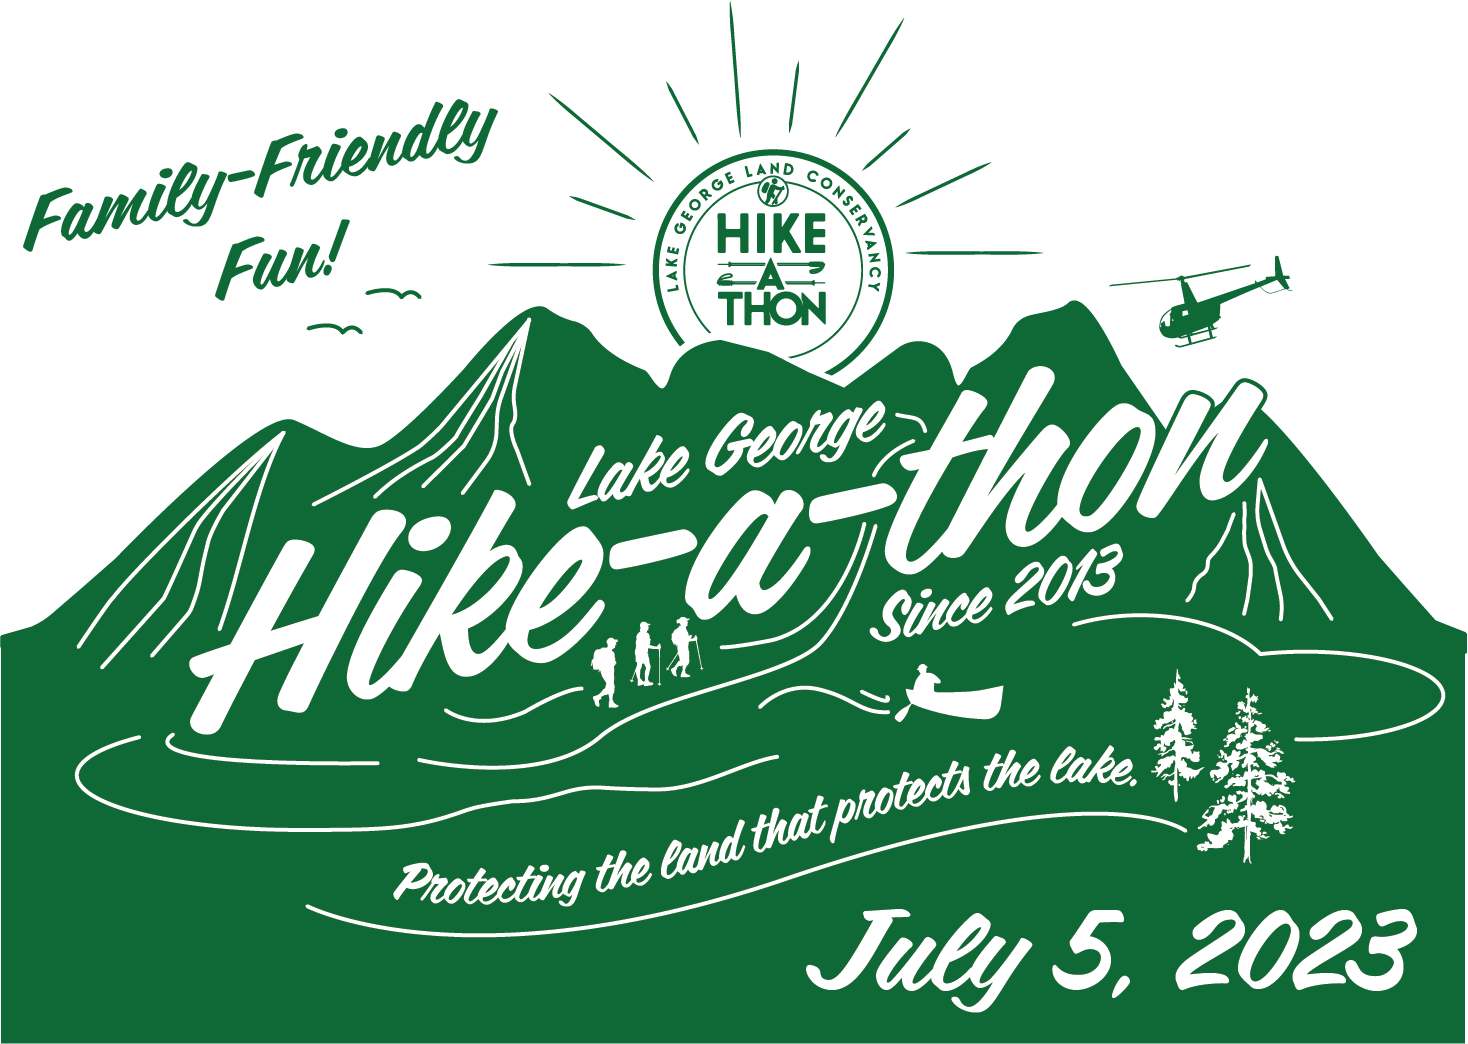 Hike-A-Thon, July 5, 2023